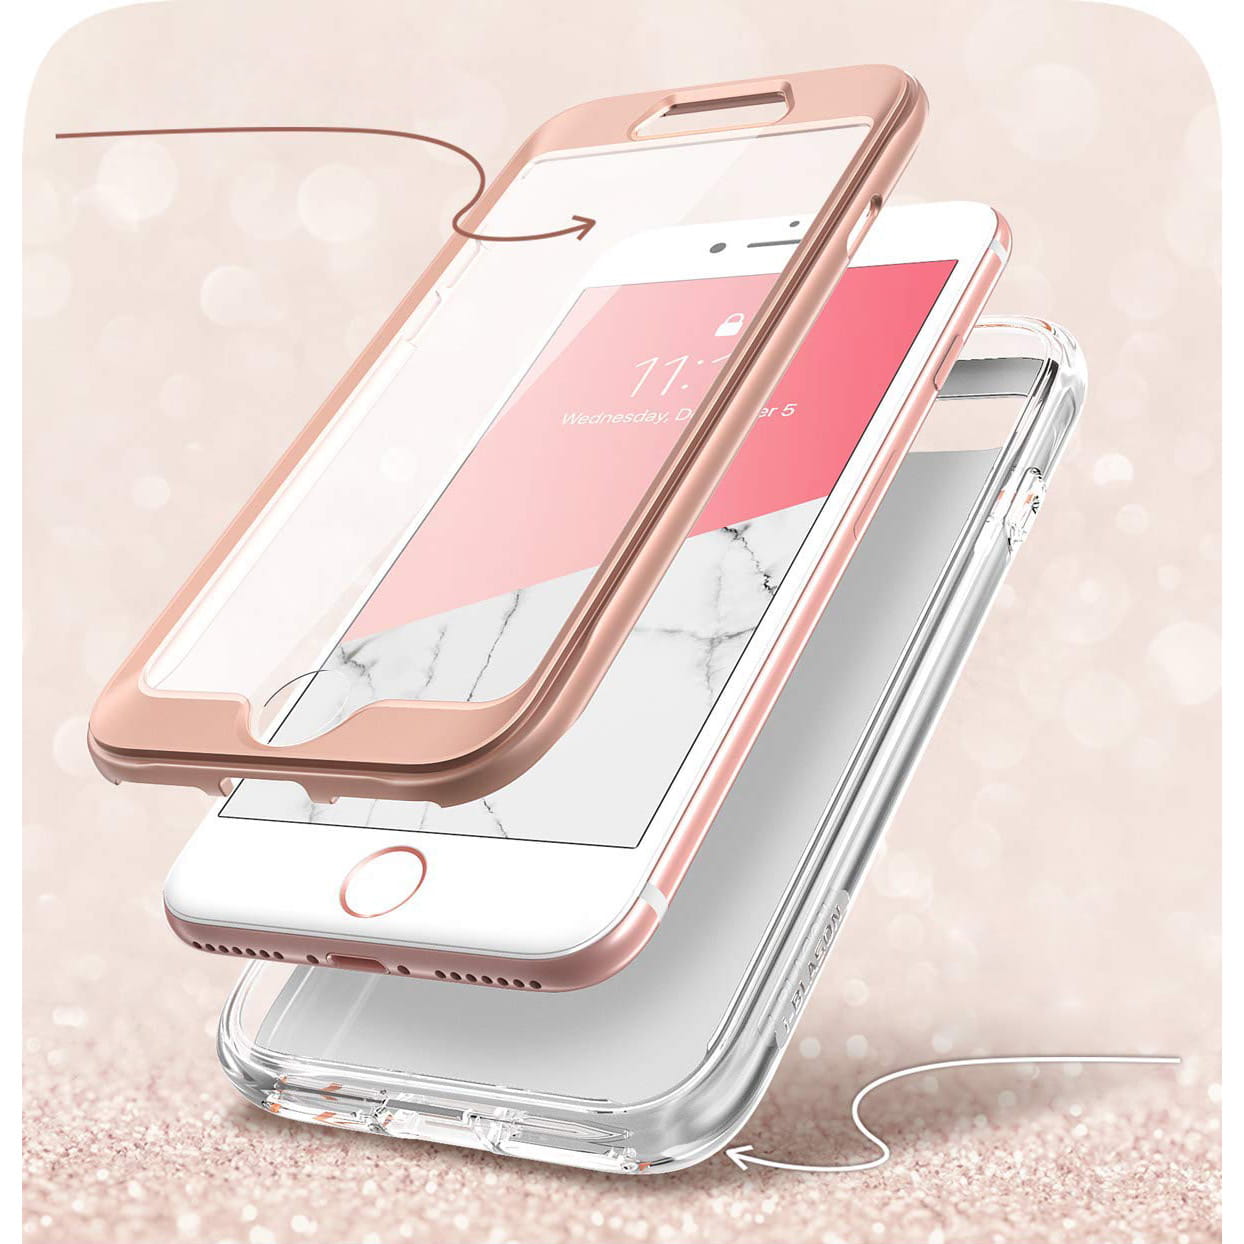 Gepanzerte Schutzhülle mit eingebautem Displayschutz Supcase i-Blason Cosmo für iPhone SE 2020, 8/7, rosa.